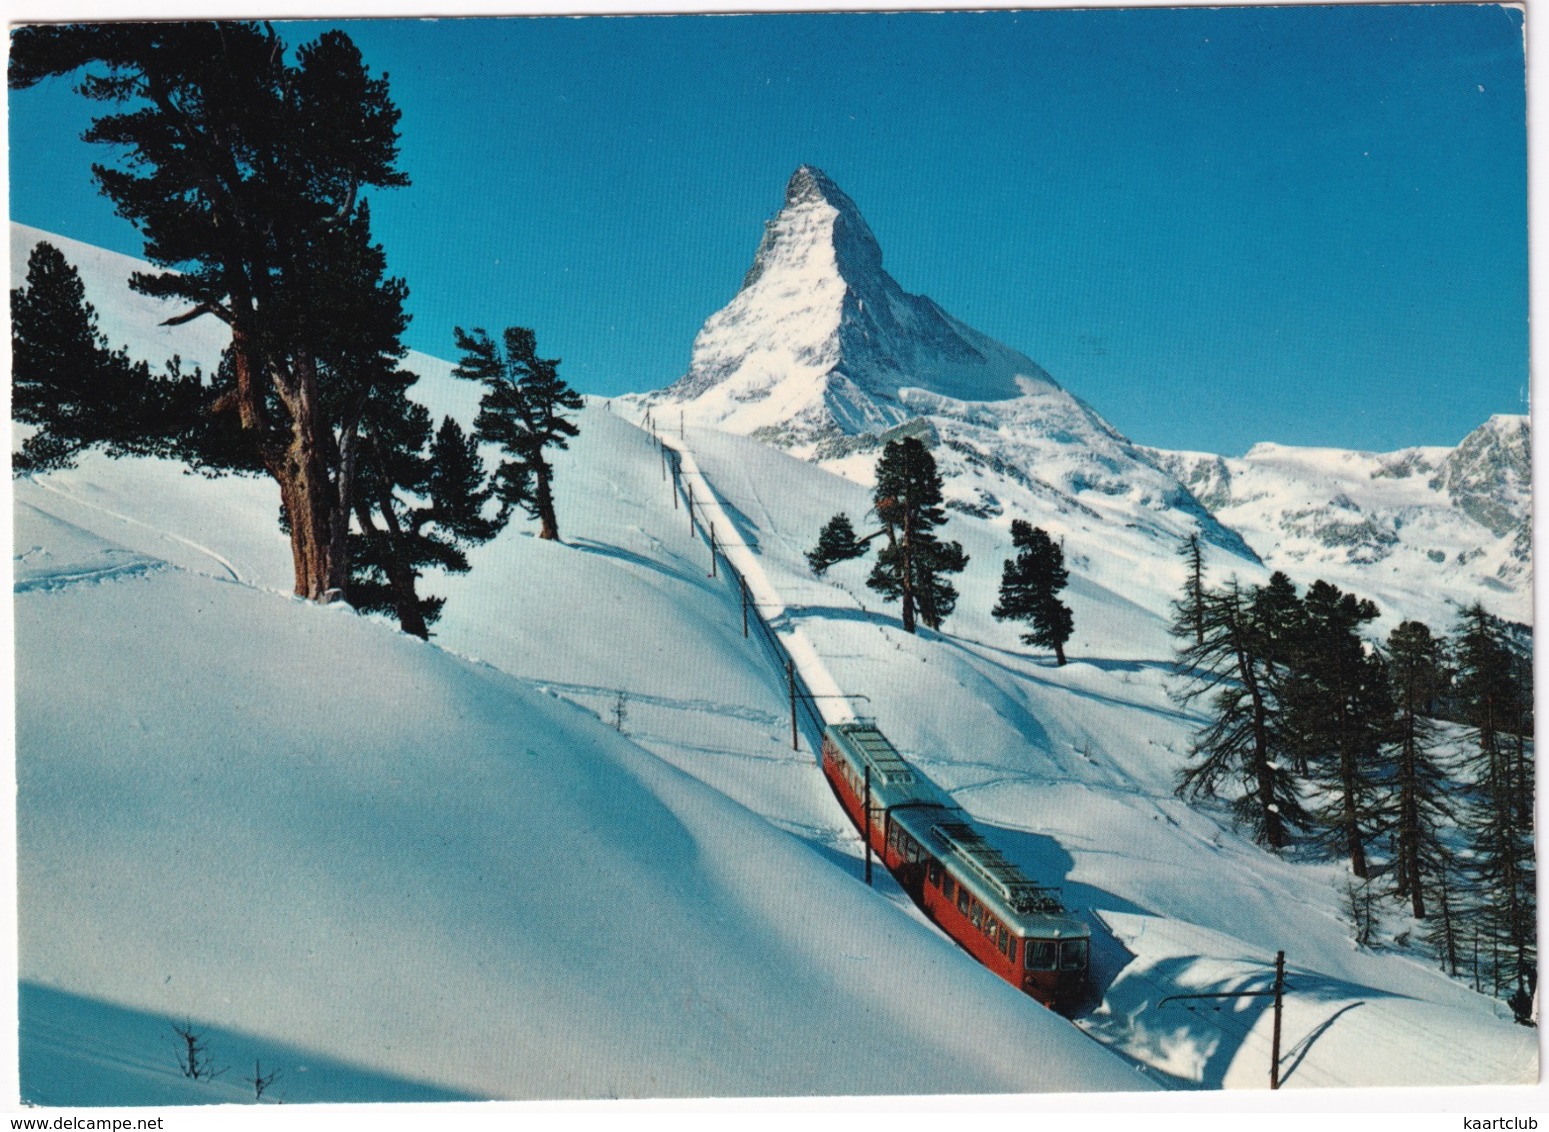 Zermatt - Die Gornergratbahn 1616-3130 M - Matterhorn 4478 M - (Schweiz/Suisse) - Treinen